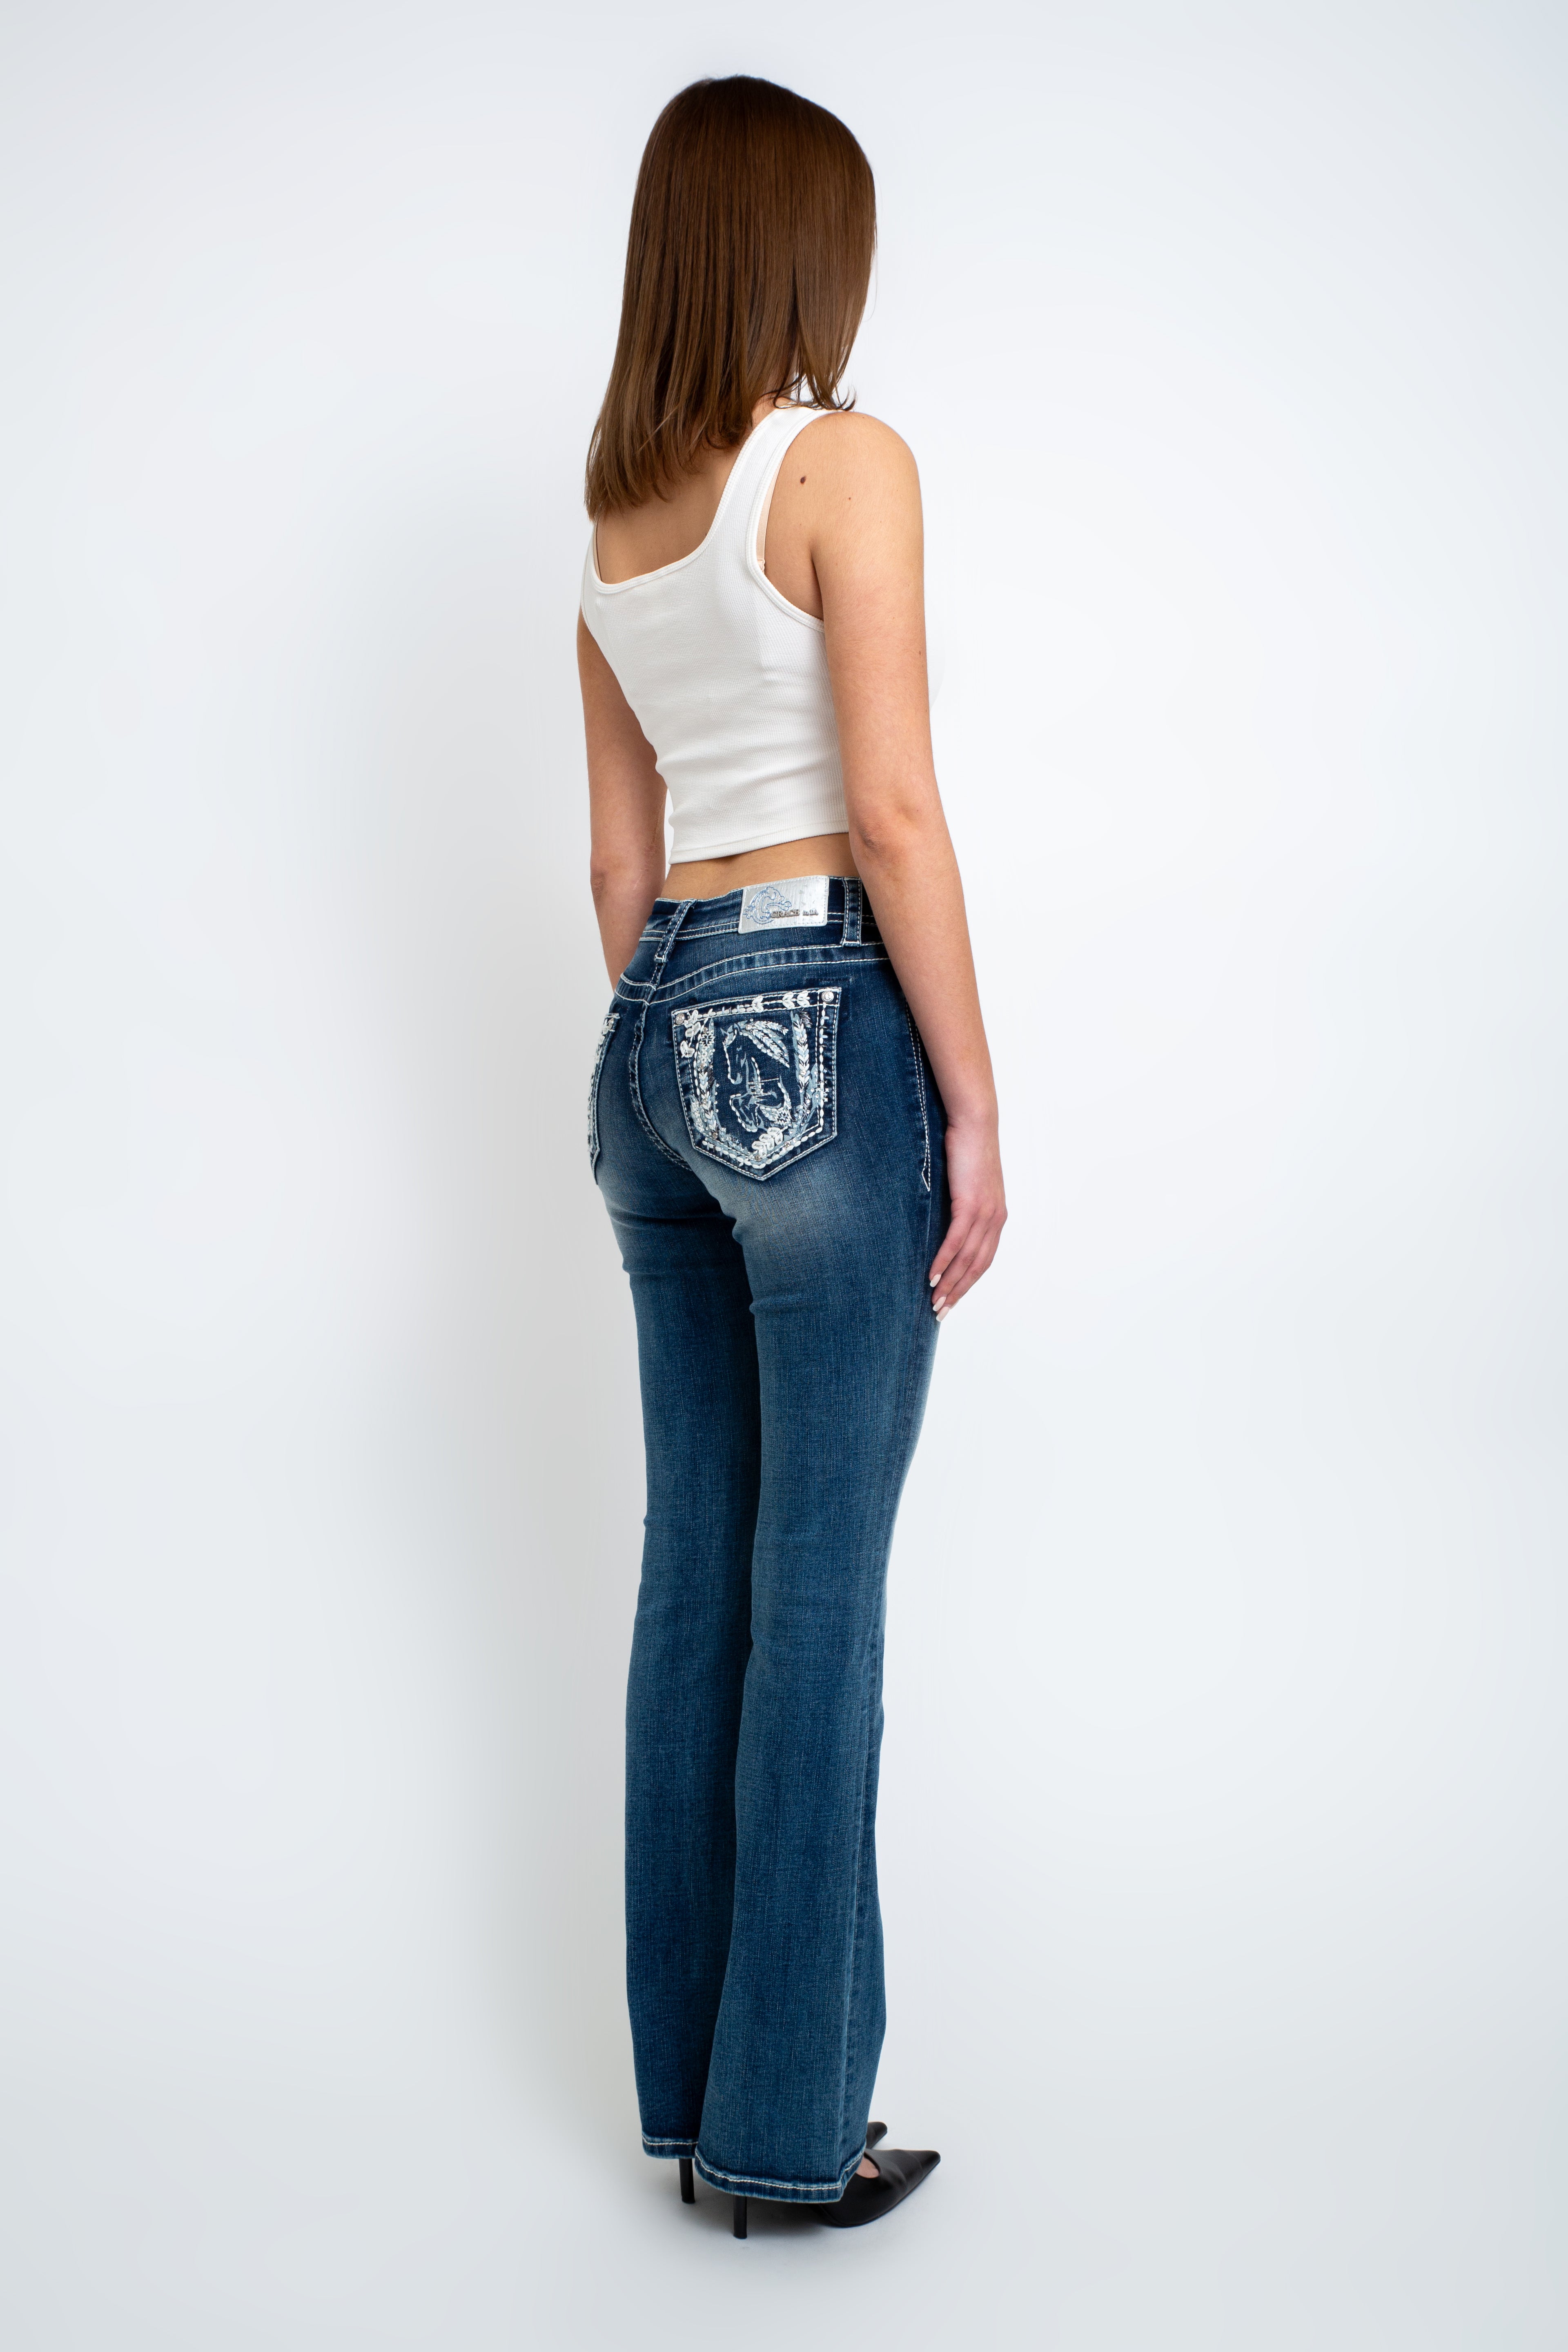 embellished jeans - embellish jeans - grace in la